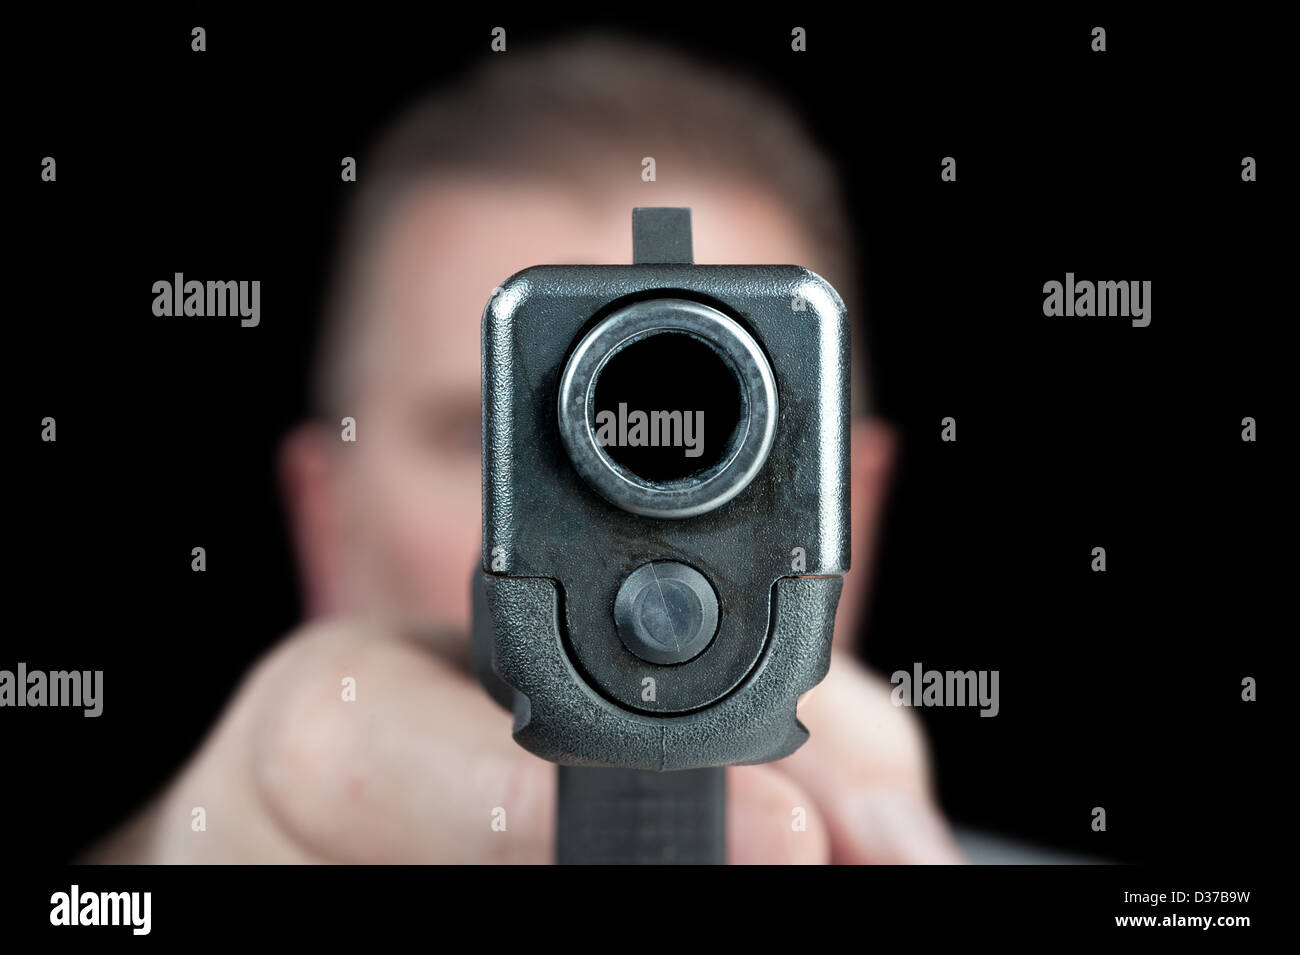 Un homme cherche son pistolet semi-automatique. Choisies, à l'avant de l'arme. Banque D'Images